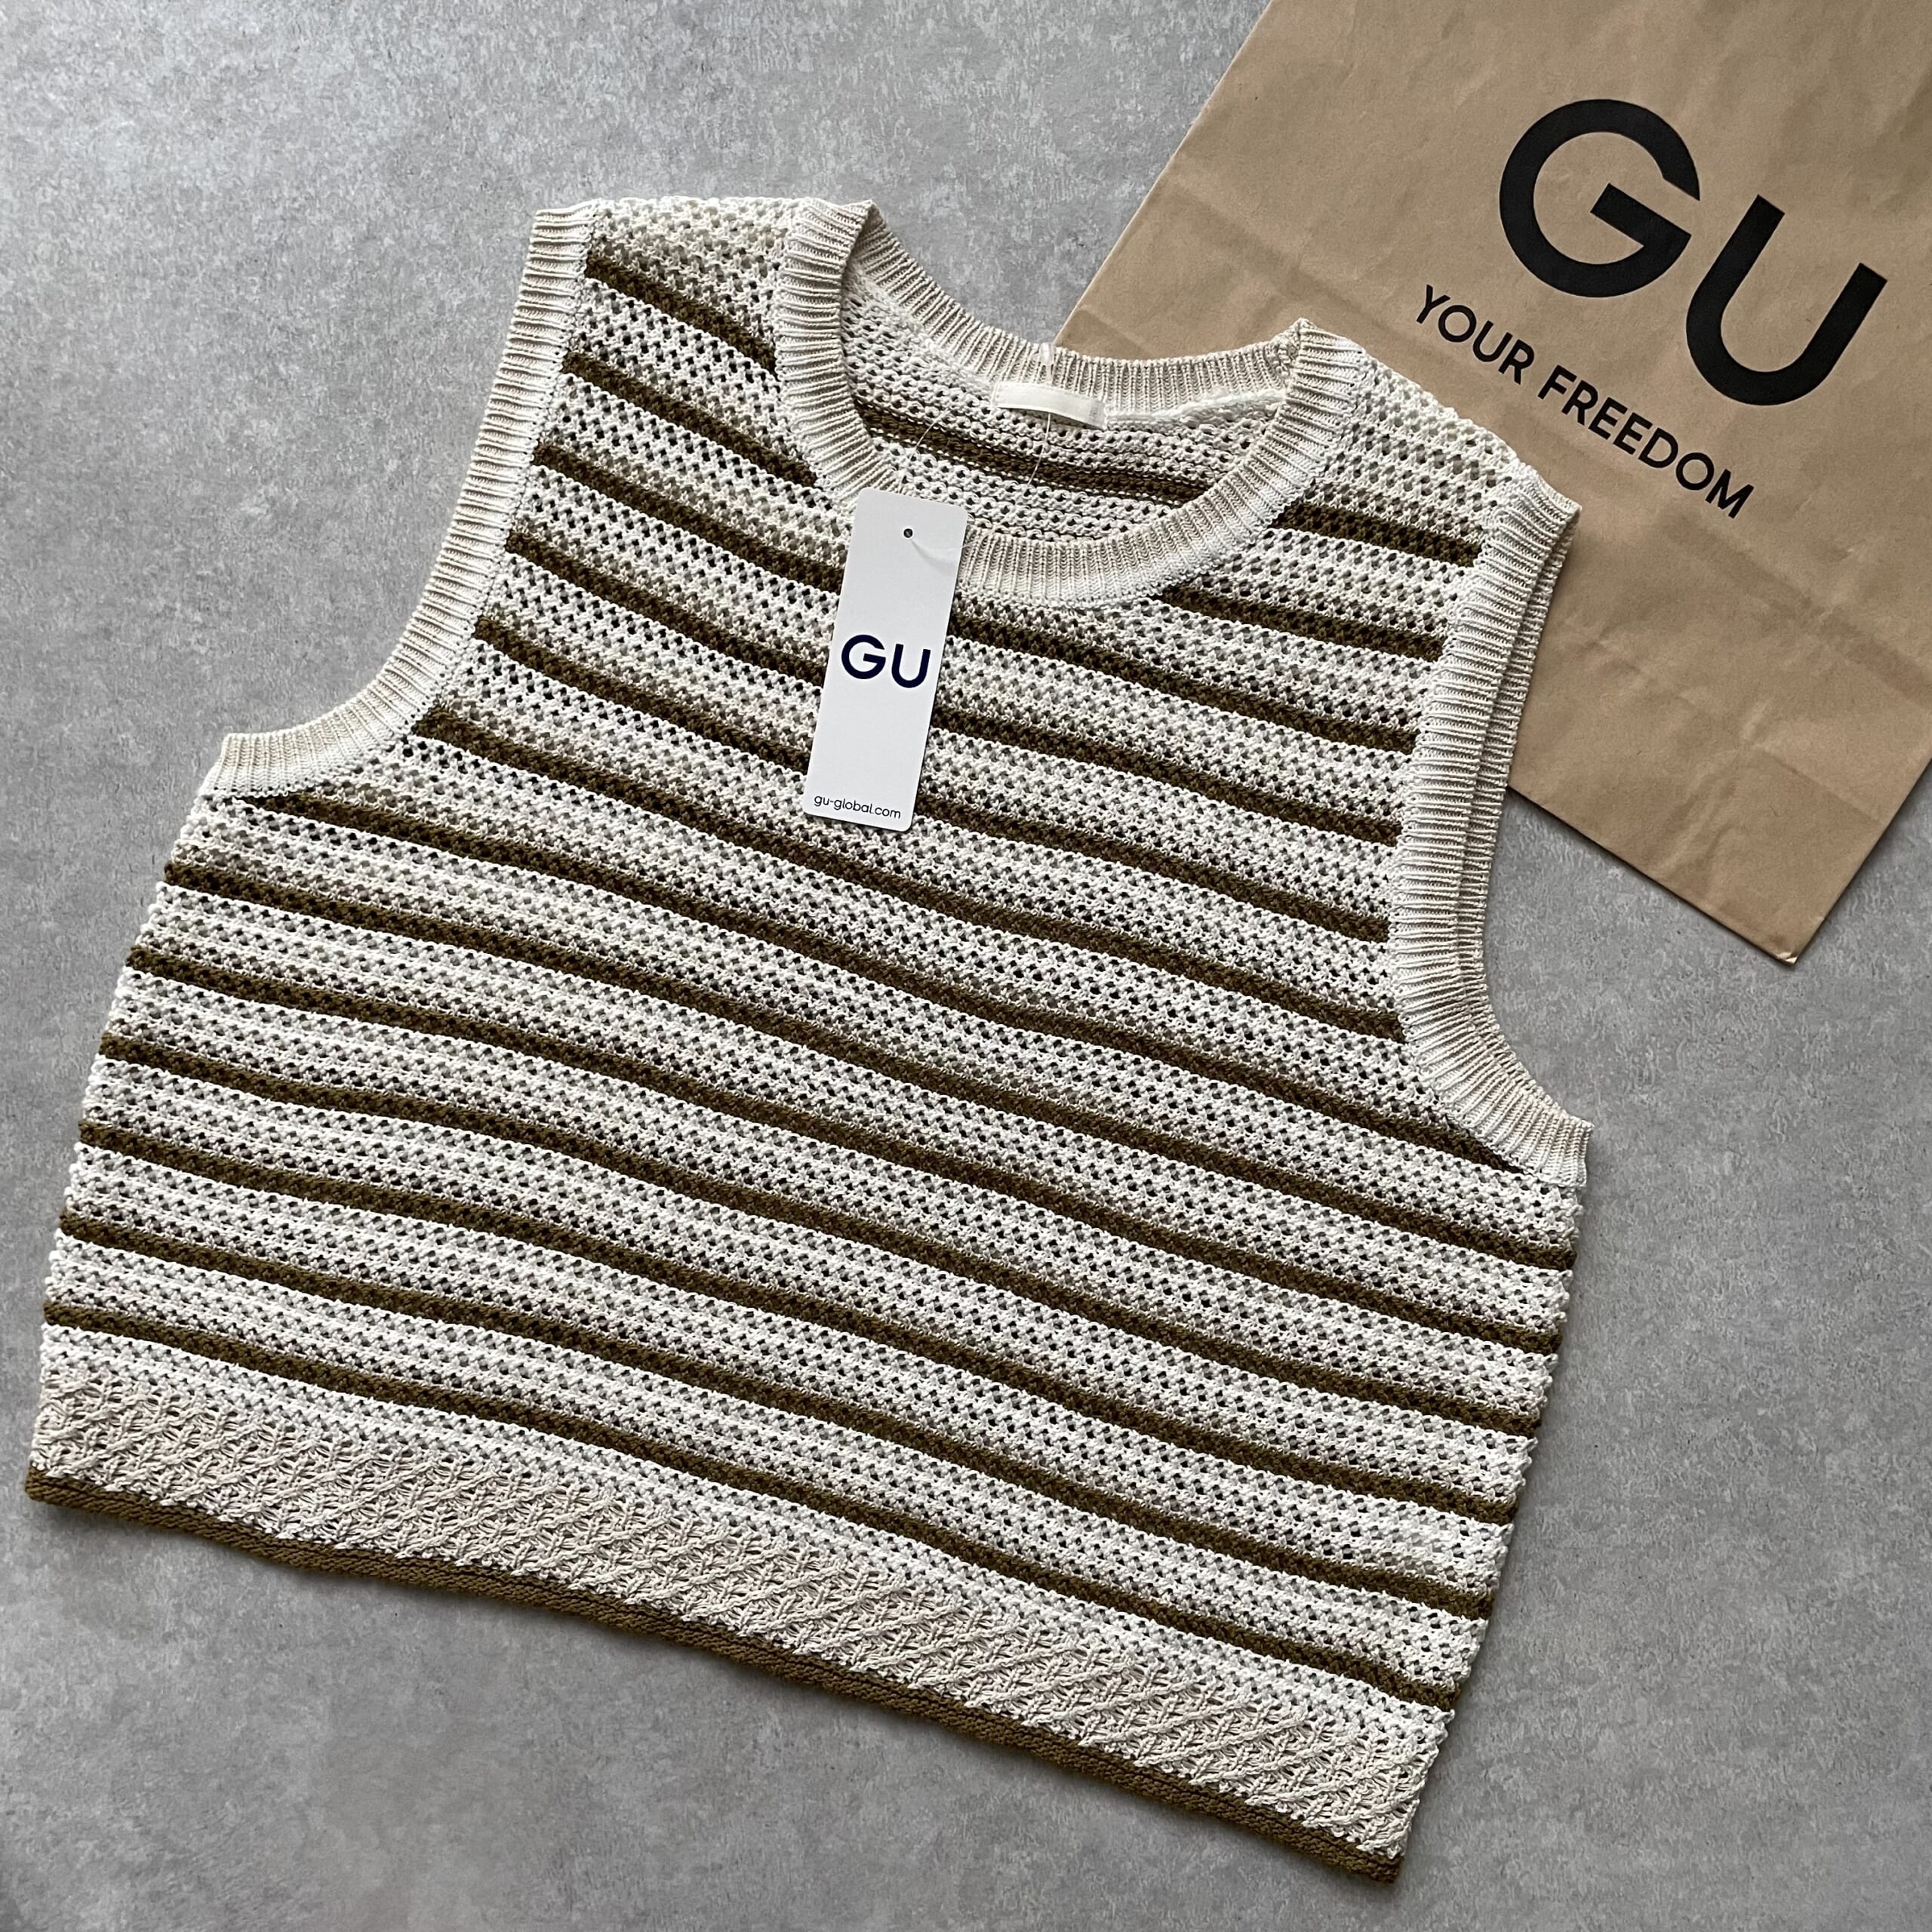 「迷わず買いました！」【GU】”透かし編みボーダーセーター“が可愛い♡